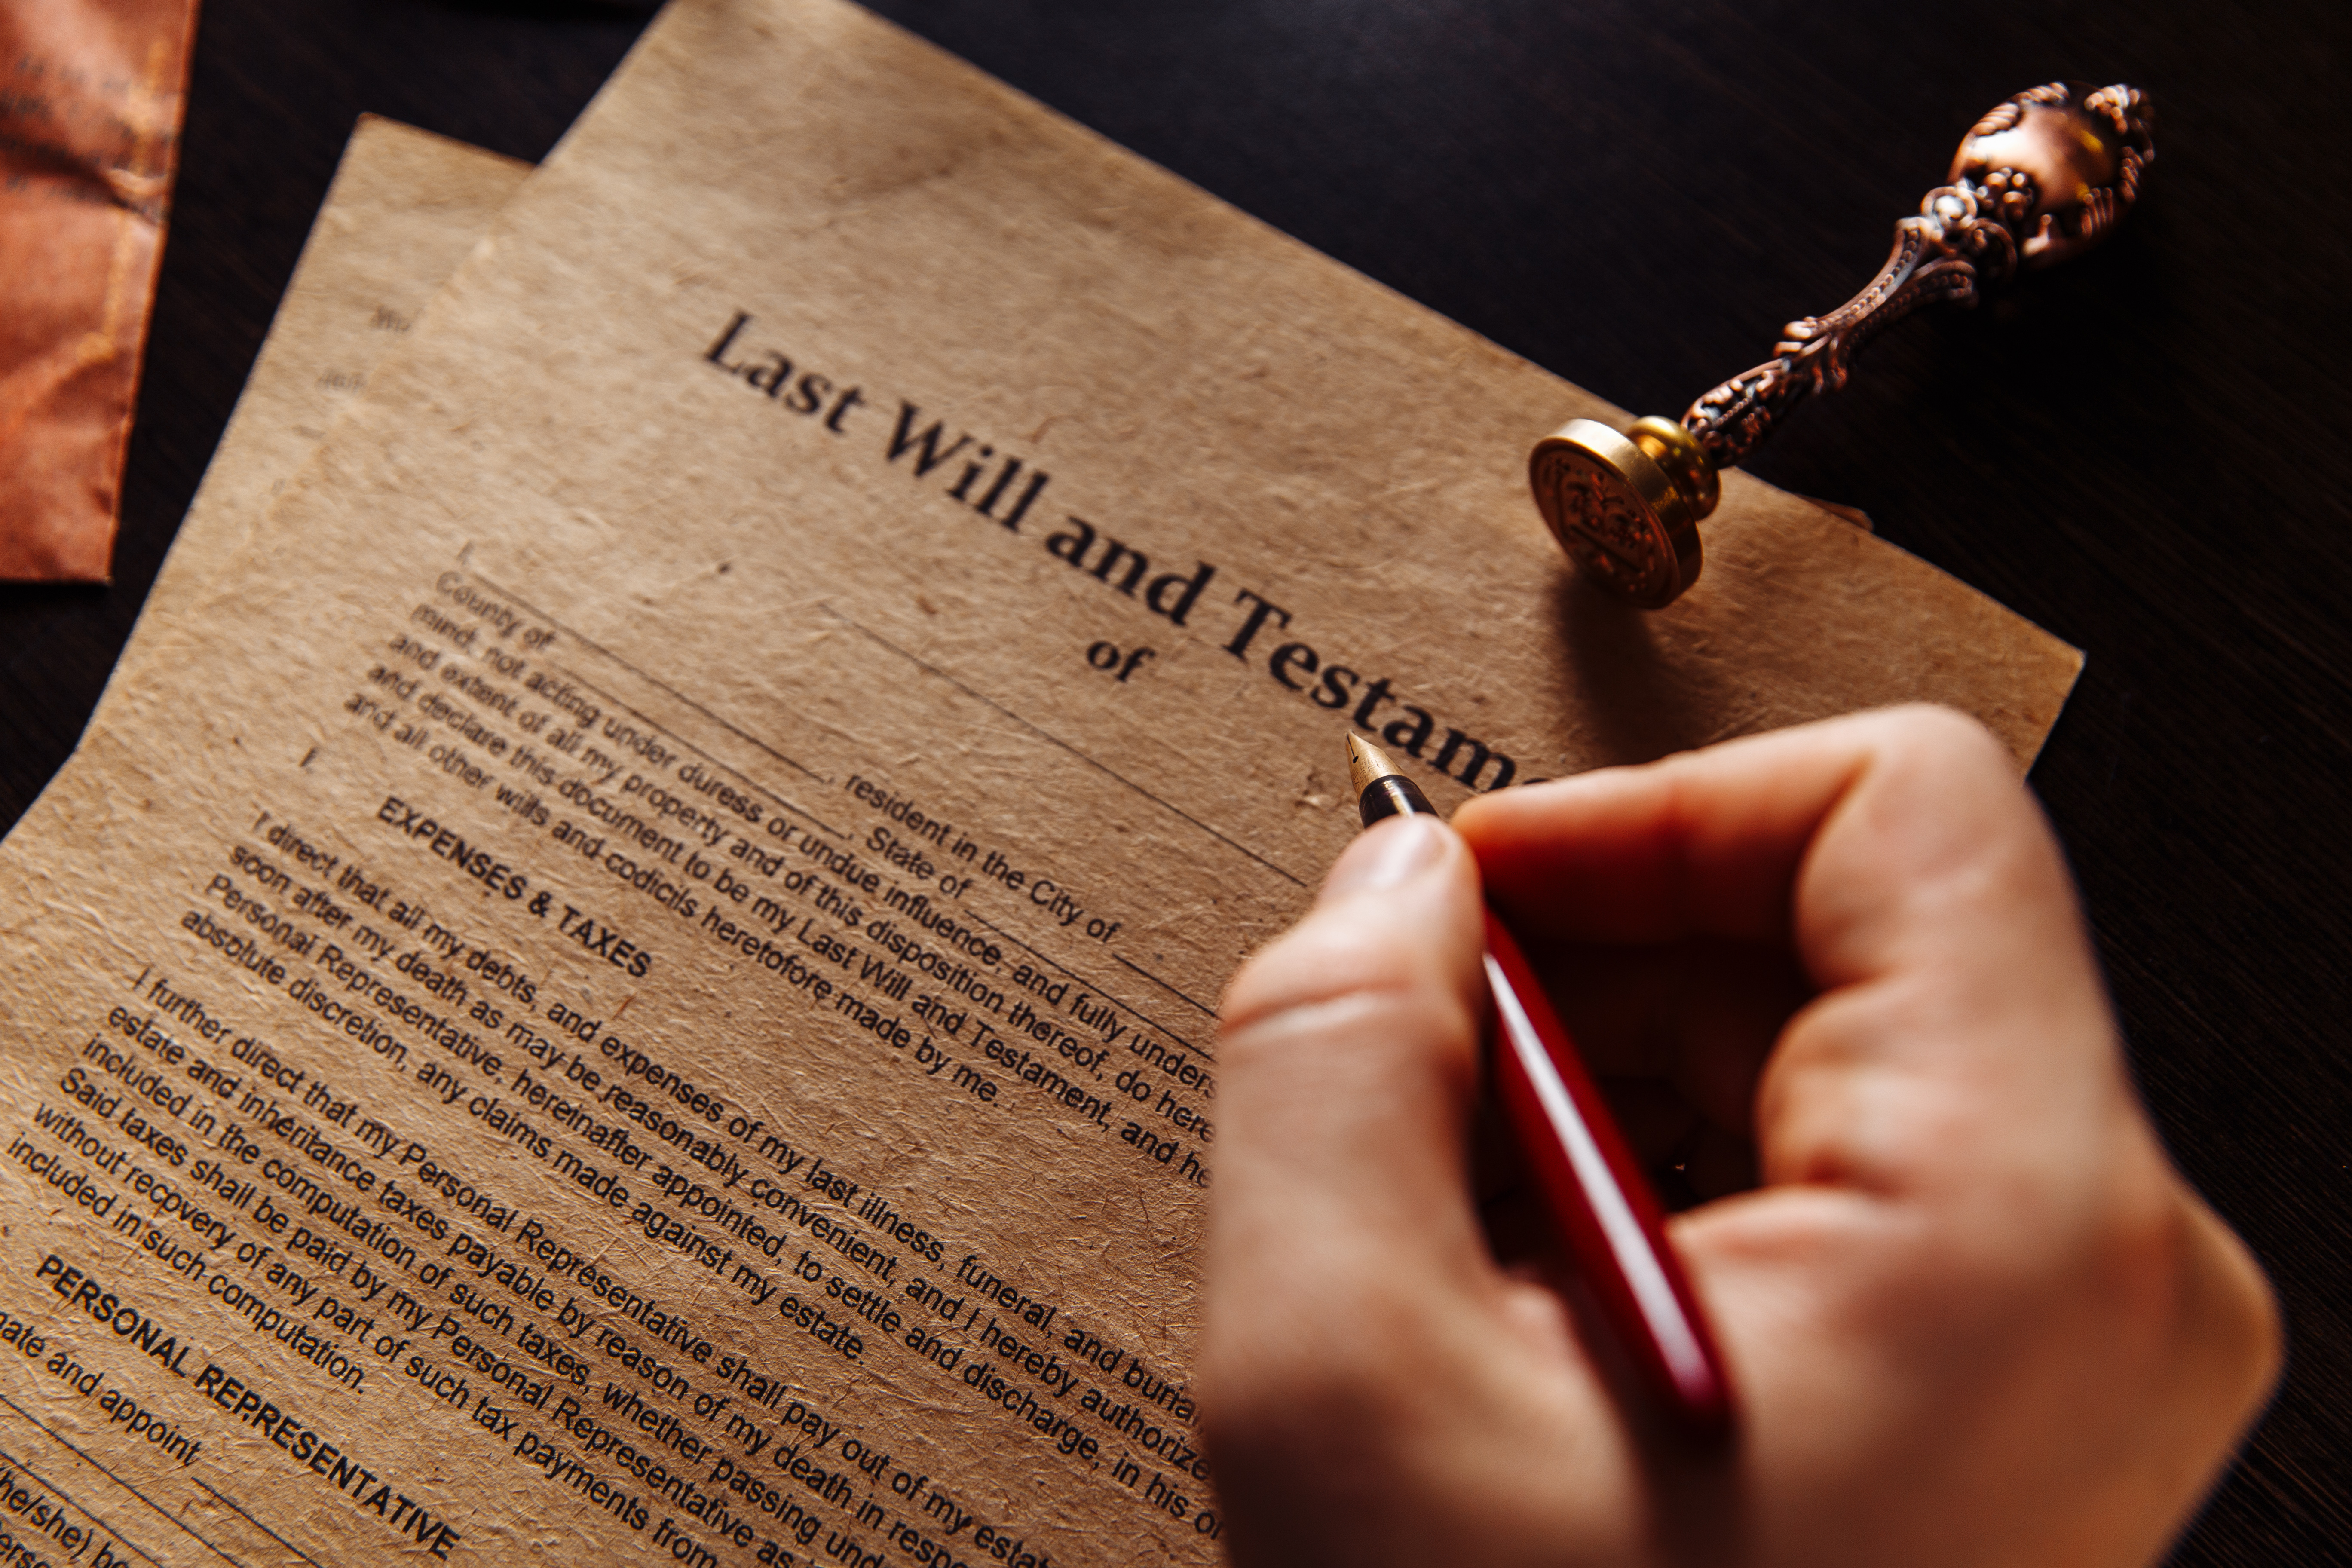 Ein Dokument mit einem letzten Willen und Testament | Quelle: Shutterstock